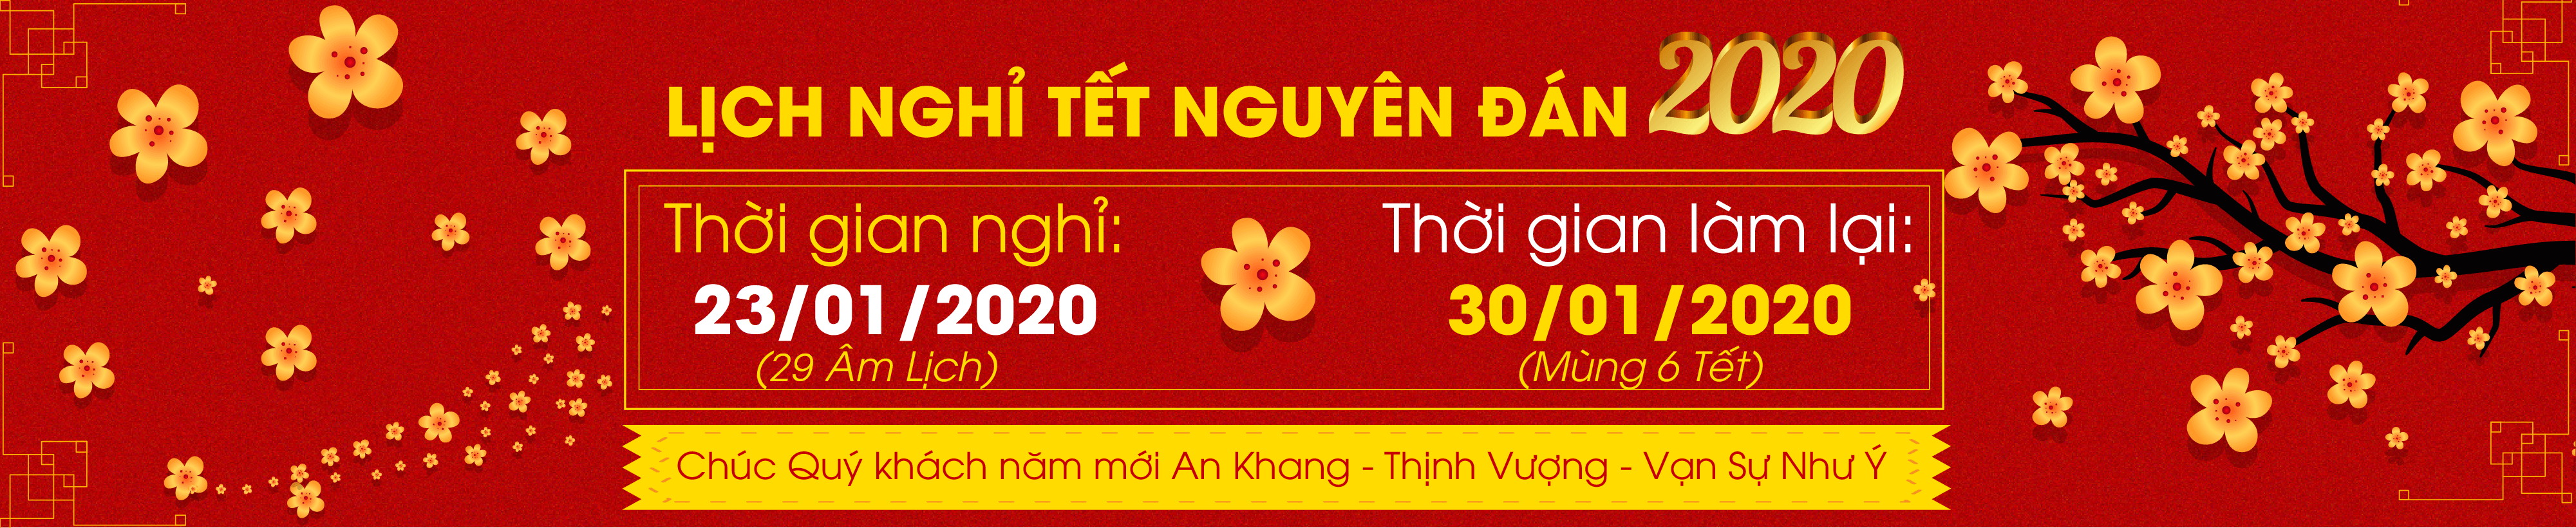 Nhà phân phối bóng đèn Philips Huỳnh Trần thông báo lịch nghỉ tết Nguyên Đán